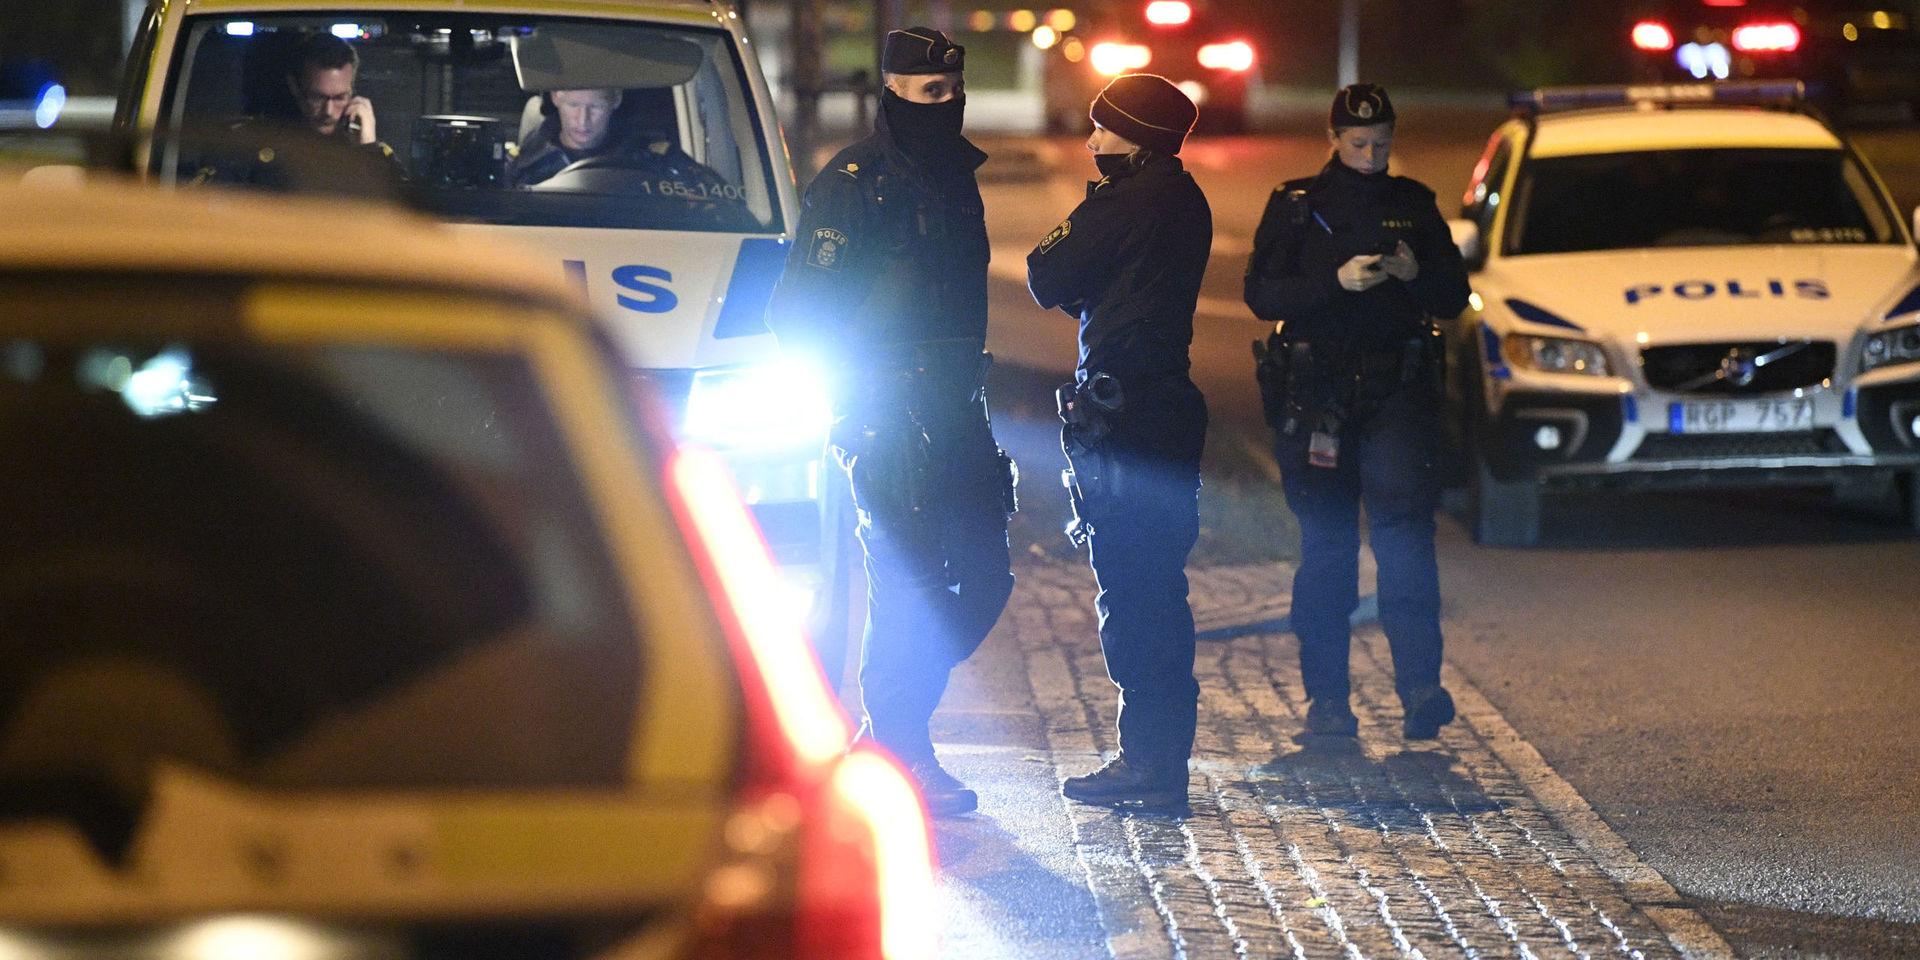 Polis och polisbilar vid Almviksvägen i Hyllie i Malmö, där ett misstänkt grovt brott begåtts enligt polisen. 